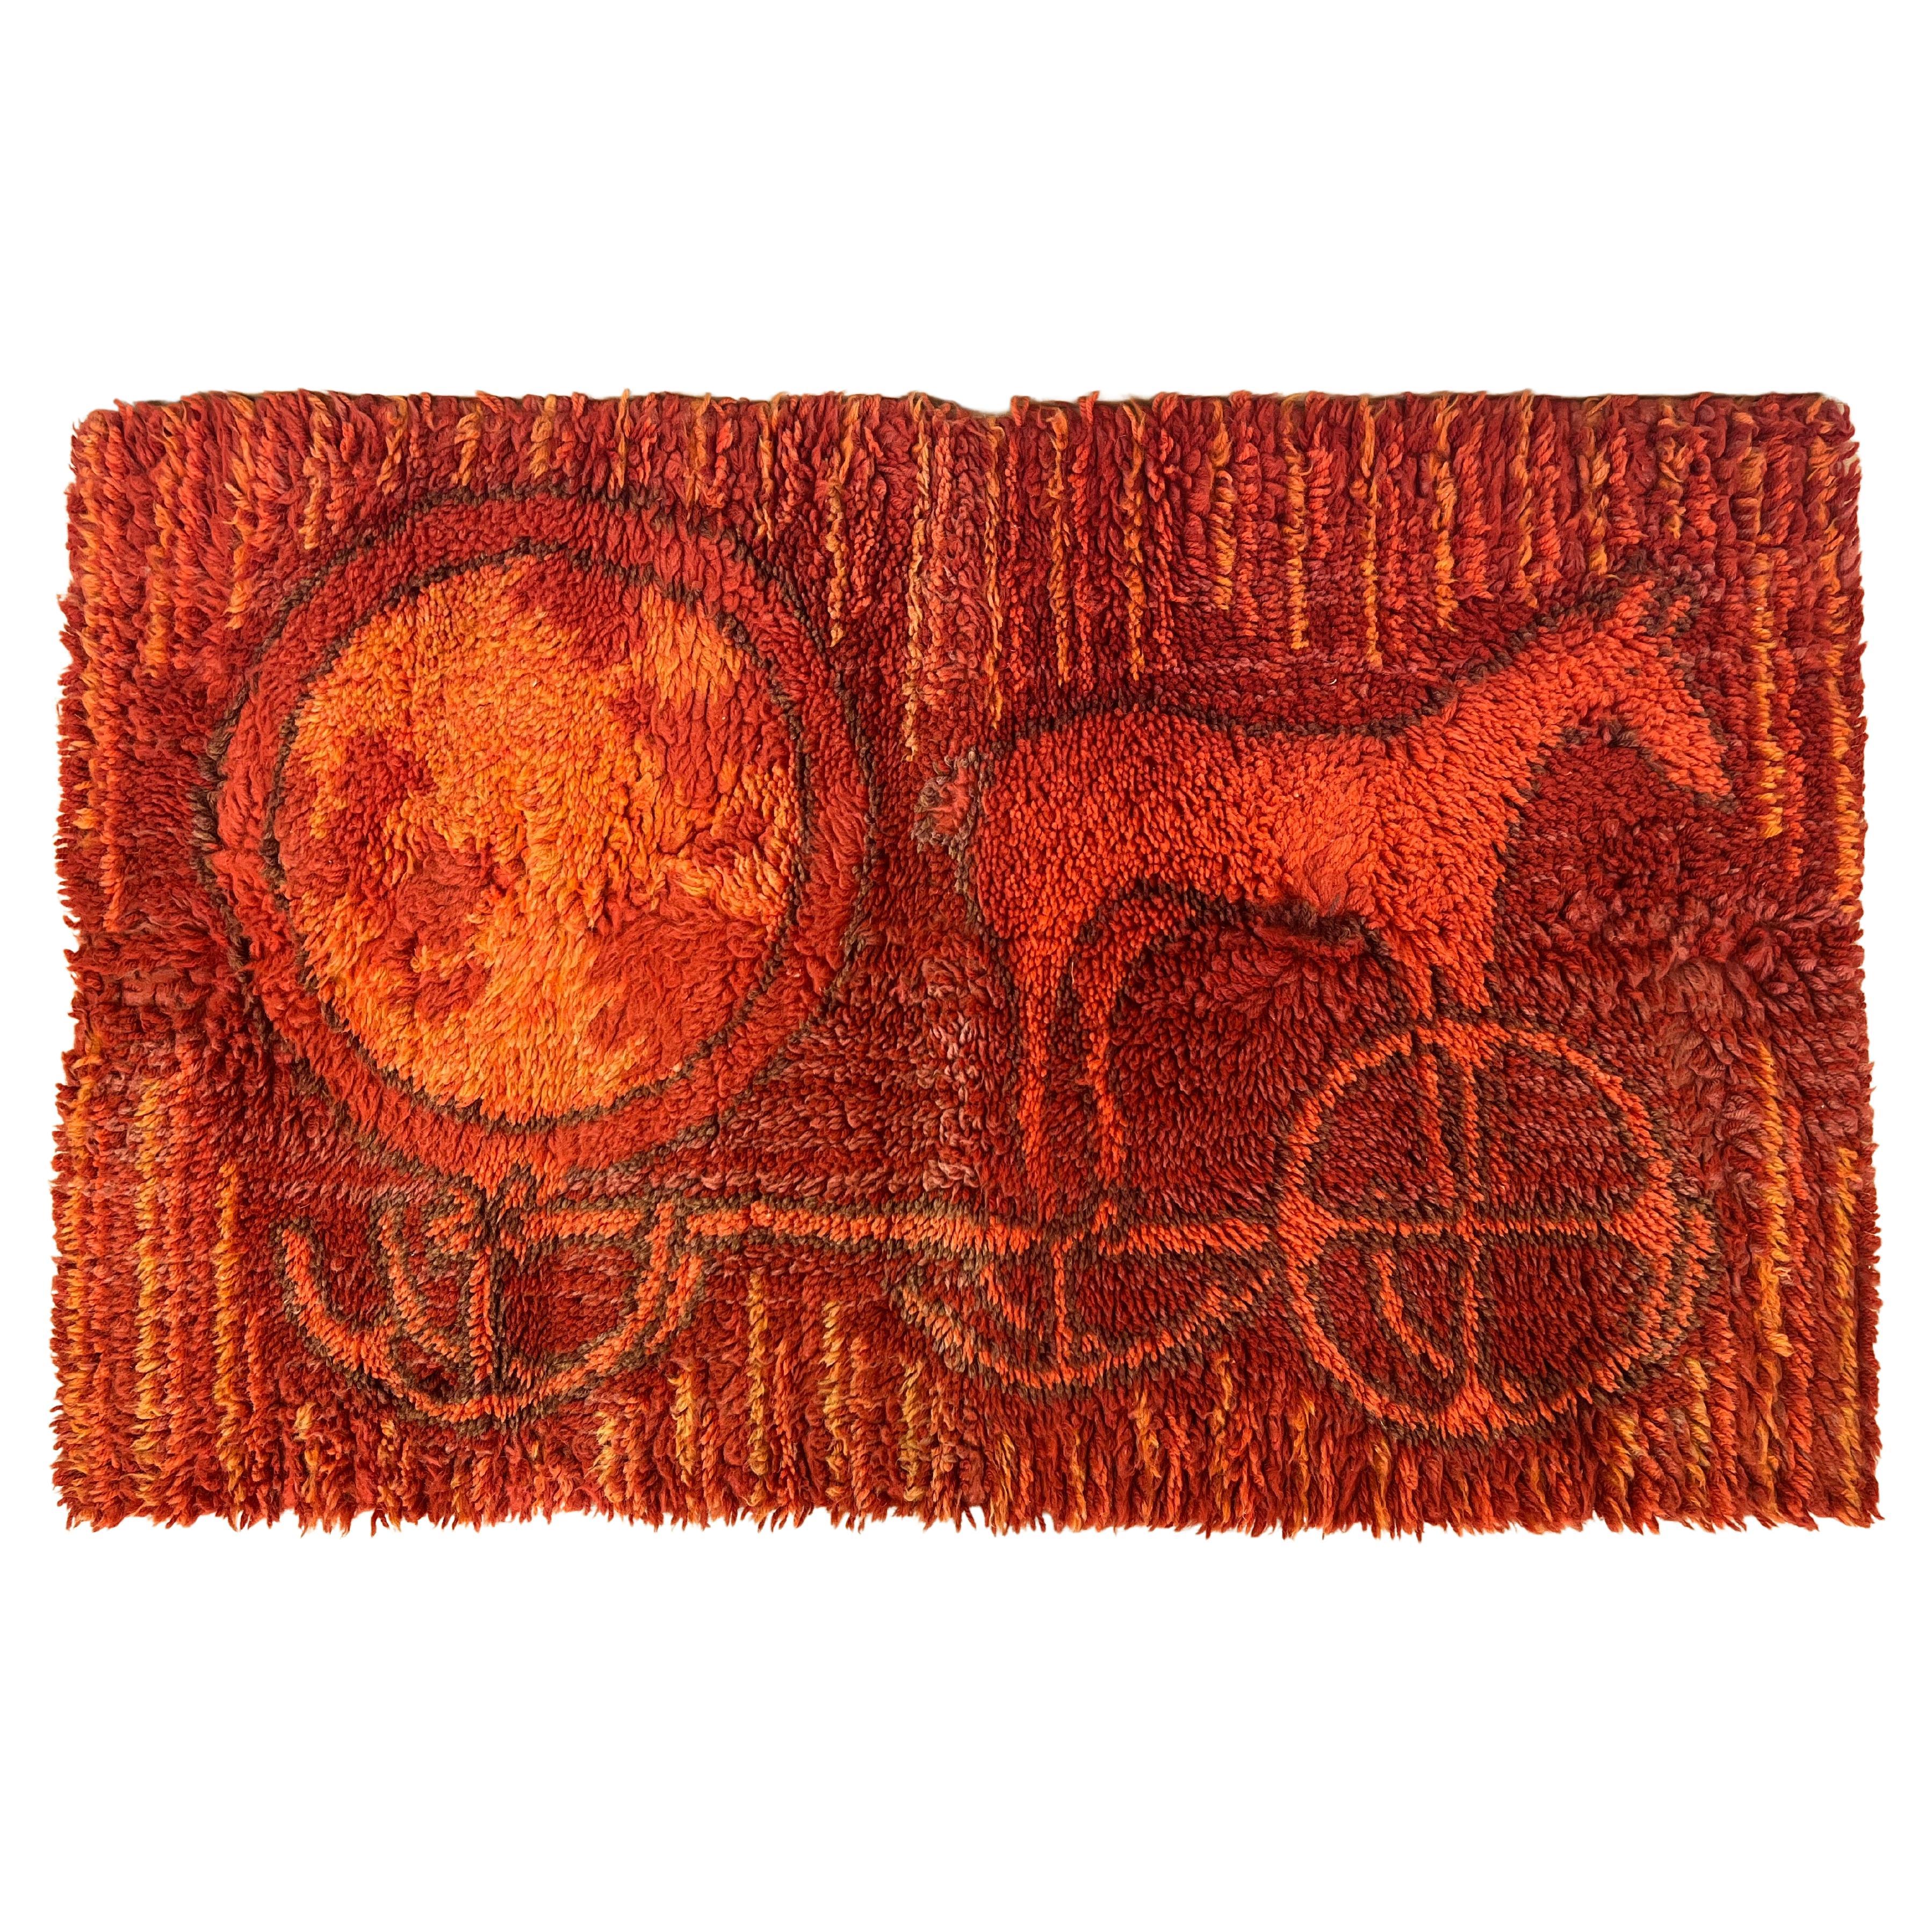 Midcentury Small Wool Ege Rya Carpet / Rug, Denmark, 1960s For Sale